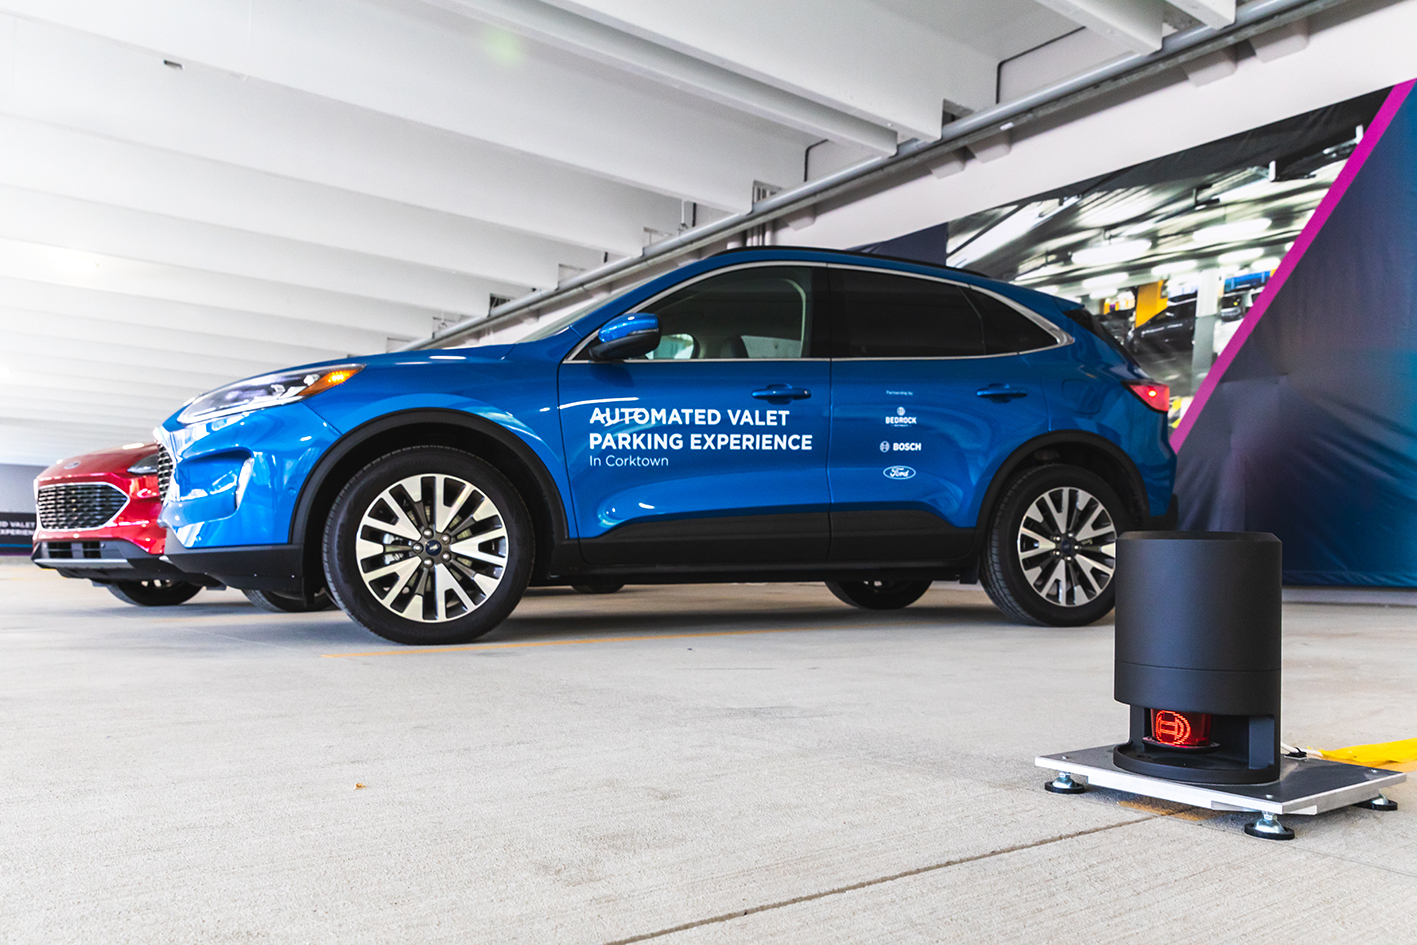 Wysoce zautomatyzowana usługa parkingowego: połączony pojazd i inteligentna infrastruktura usprawniają automatyczne parkowanie.